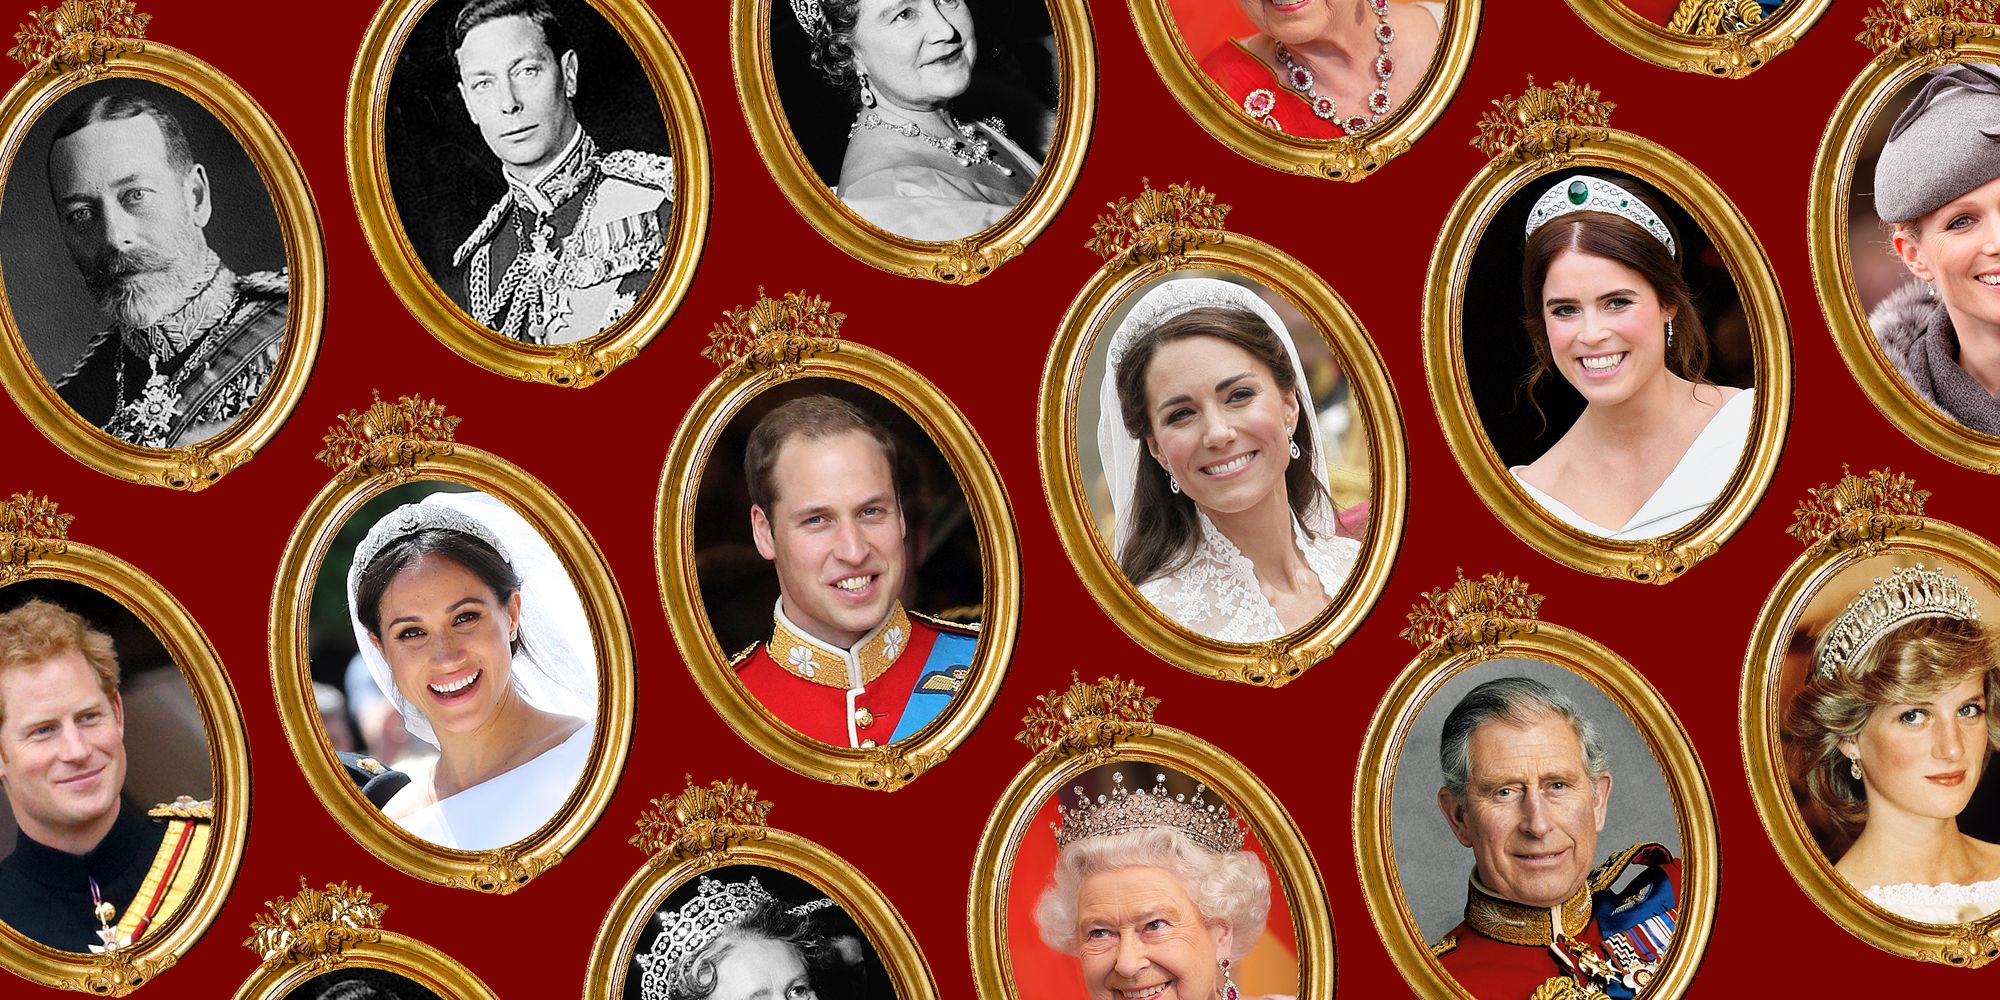 Таємниця розкрита: навіщо фотошоплять фото британської королівської родини